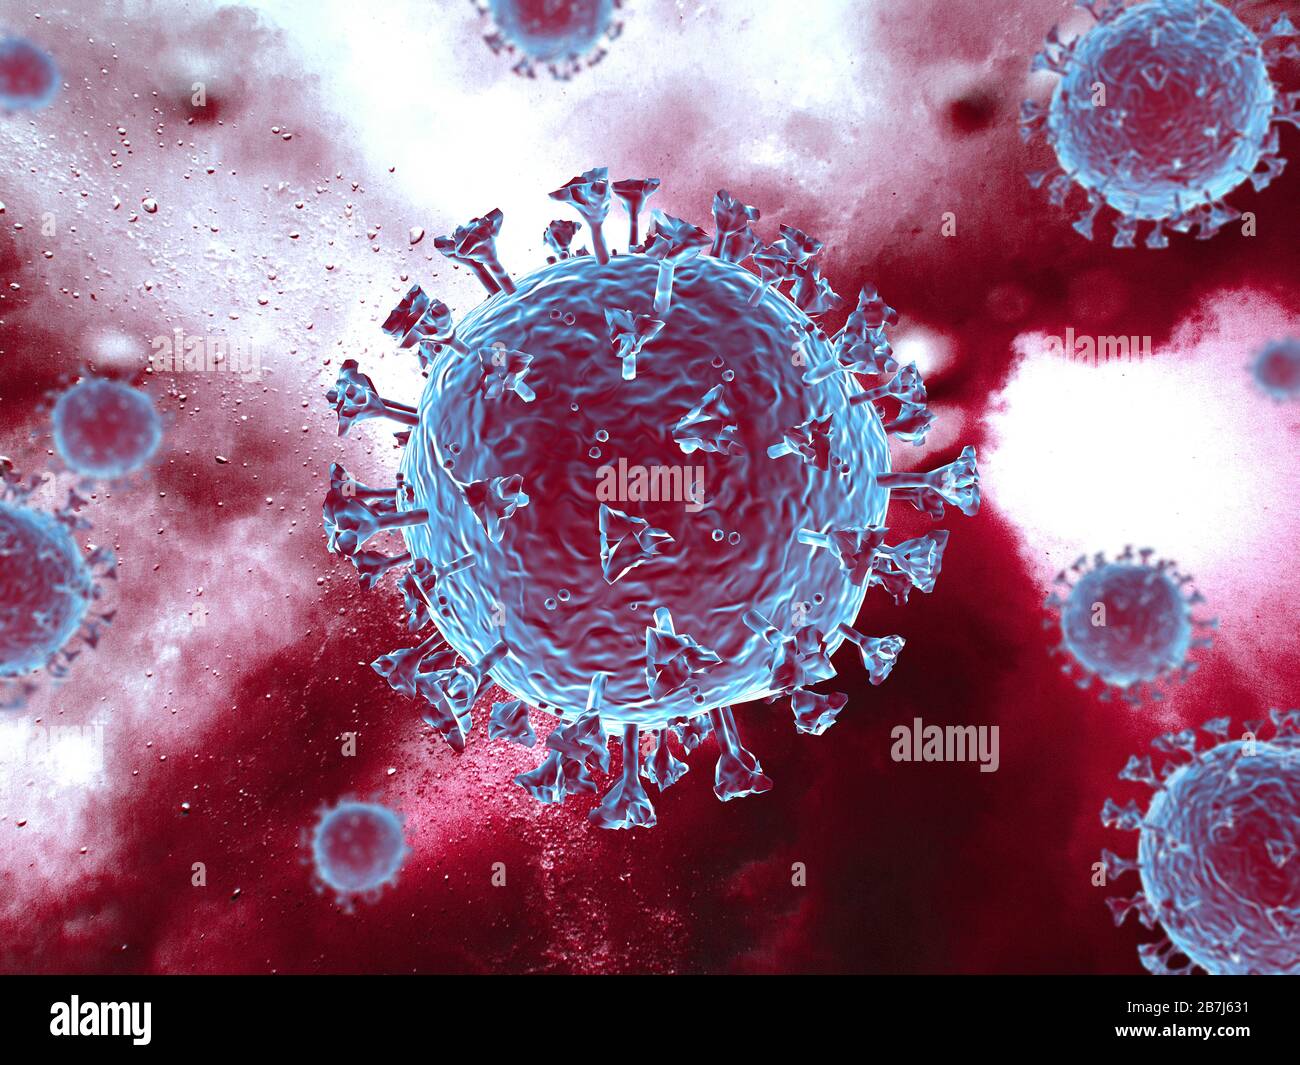 Corona-Virenszene mit detaillierter Struktur. Blau/rote Motive auf rotem Hintergrund. 3D-Rendering. Stockfoto